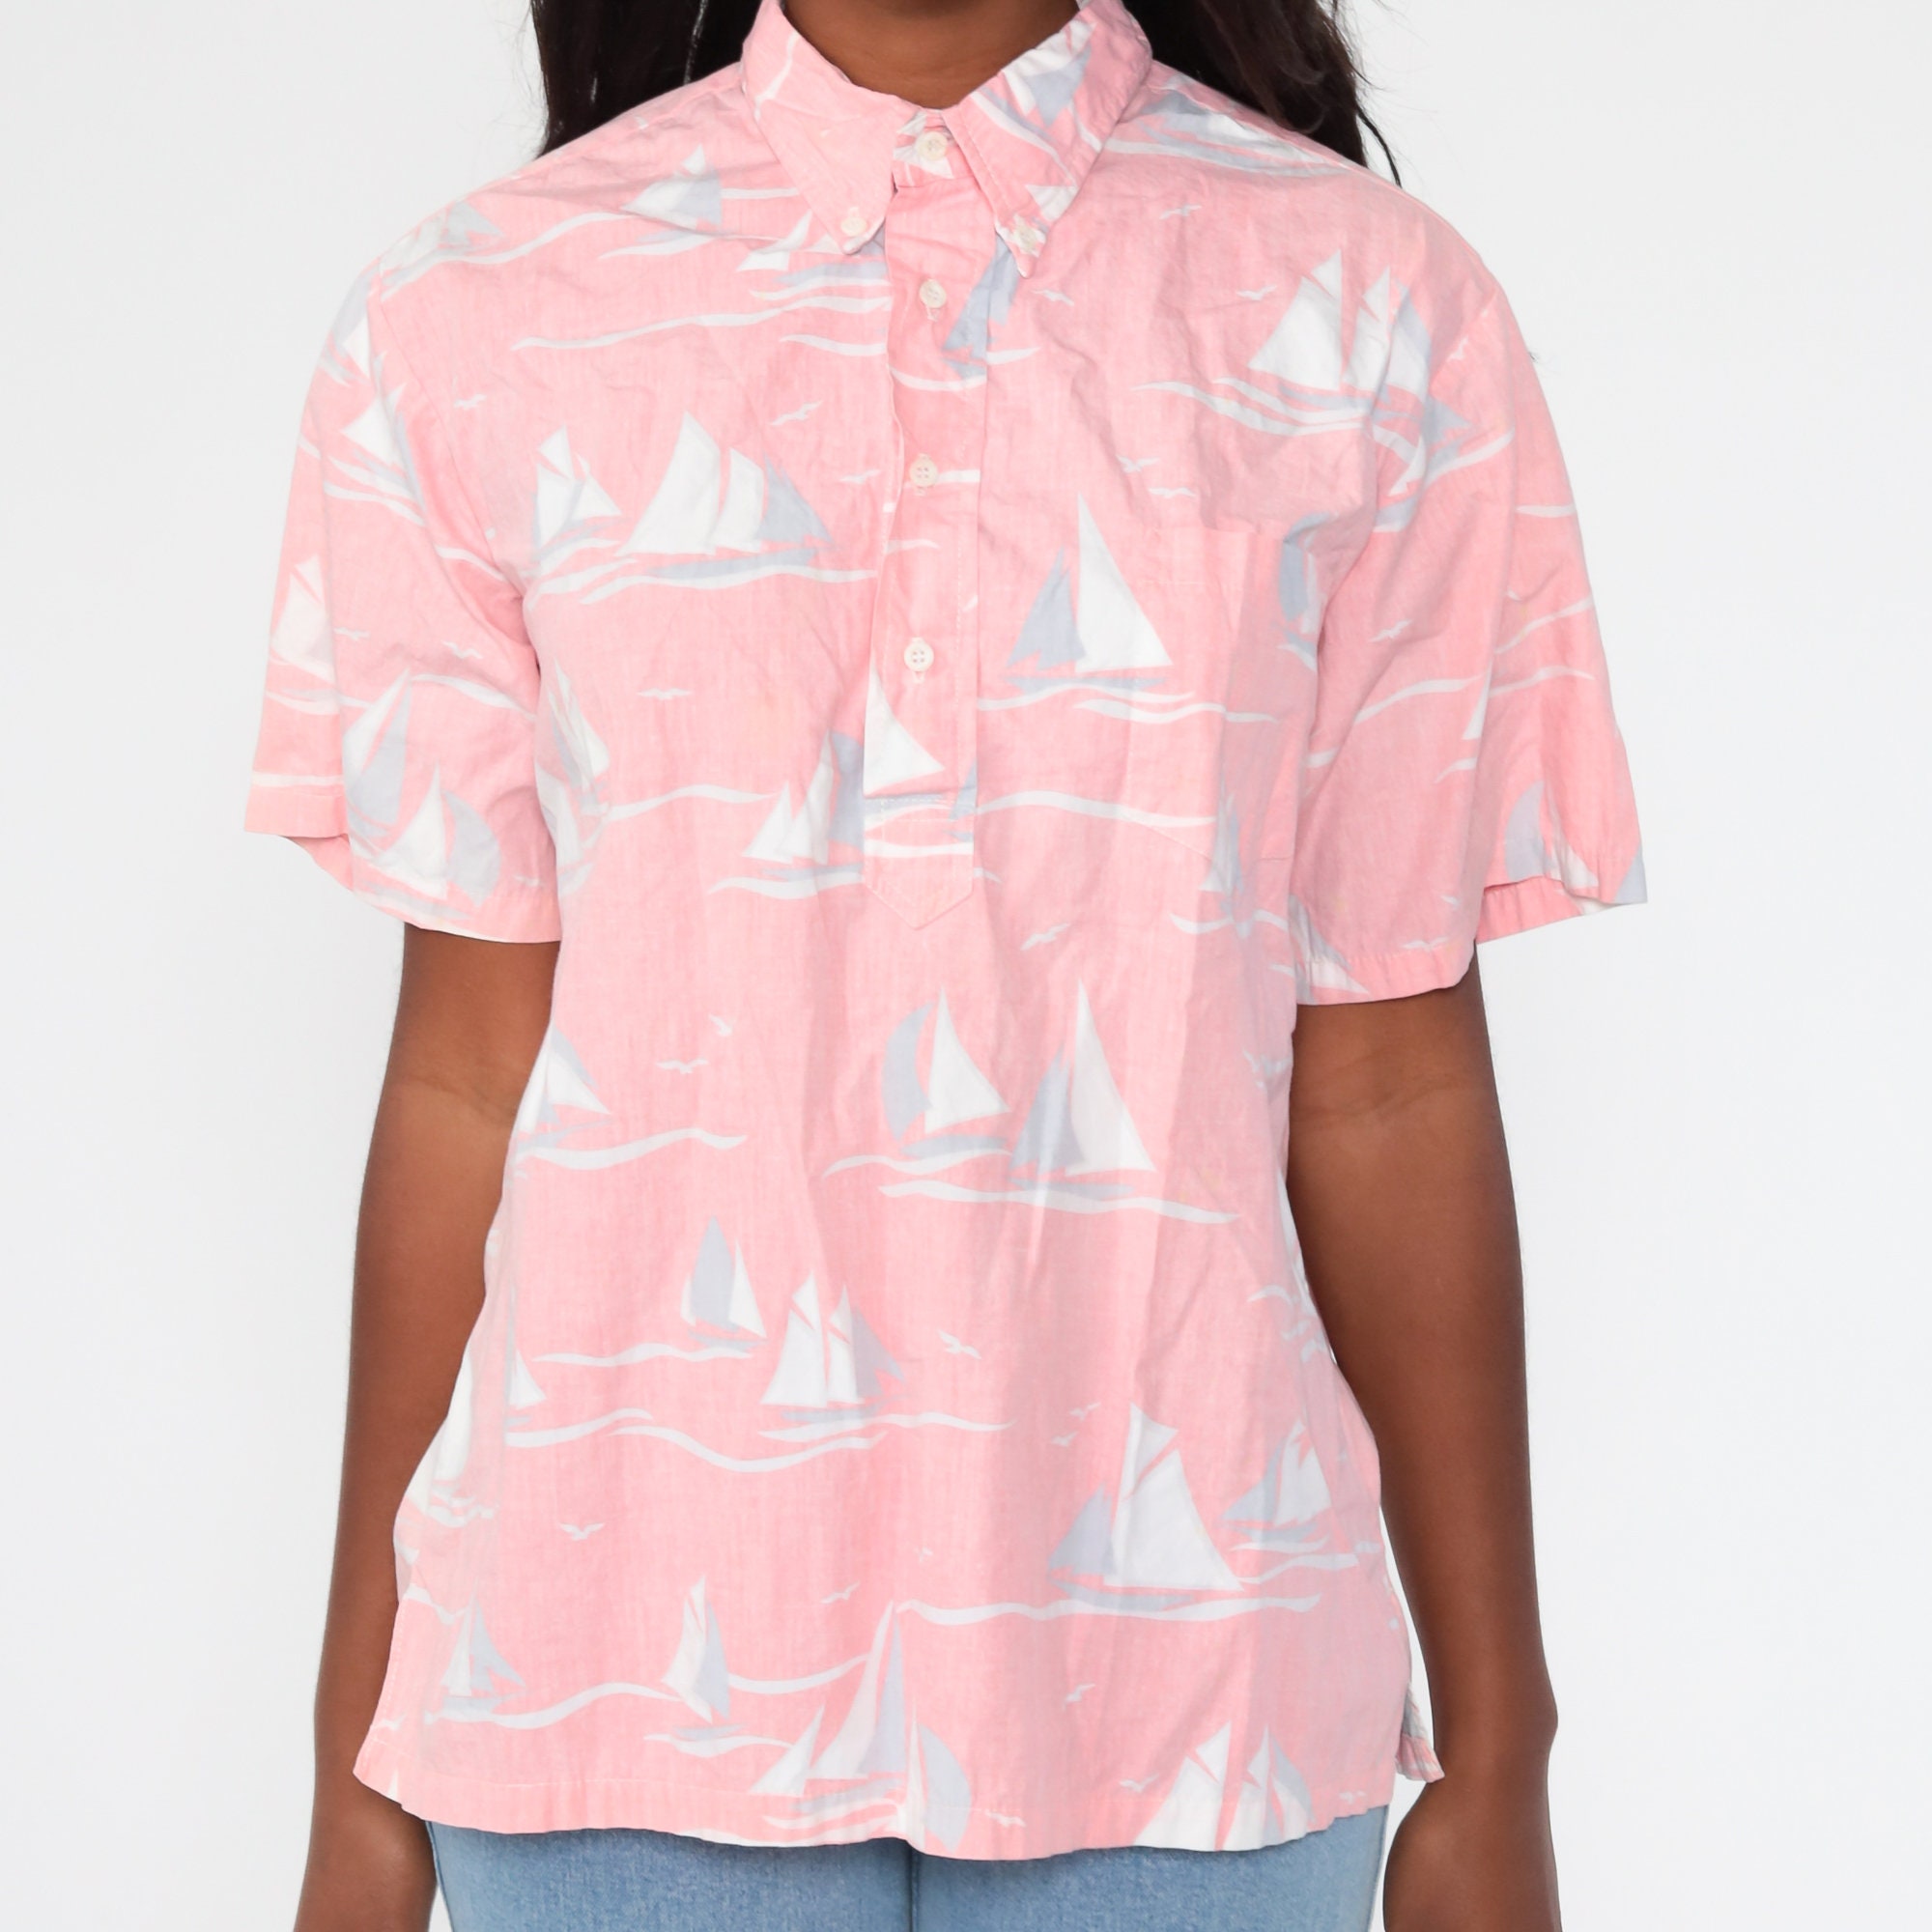 Sailboat Shirt 80s Nautical Sailor Shirt Pink Yacht Shirt Button Up ...